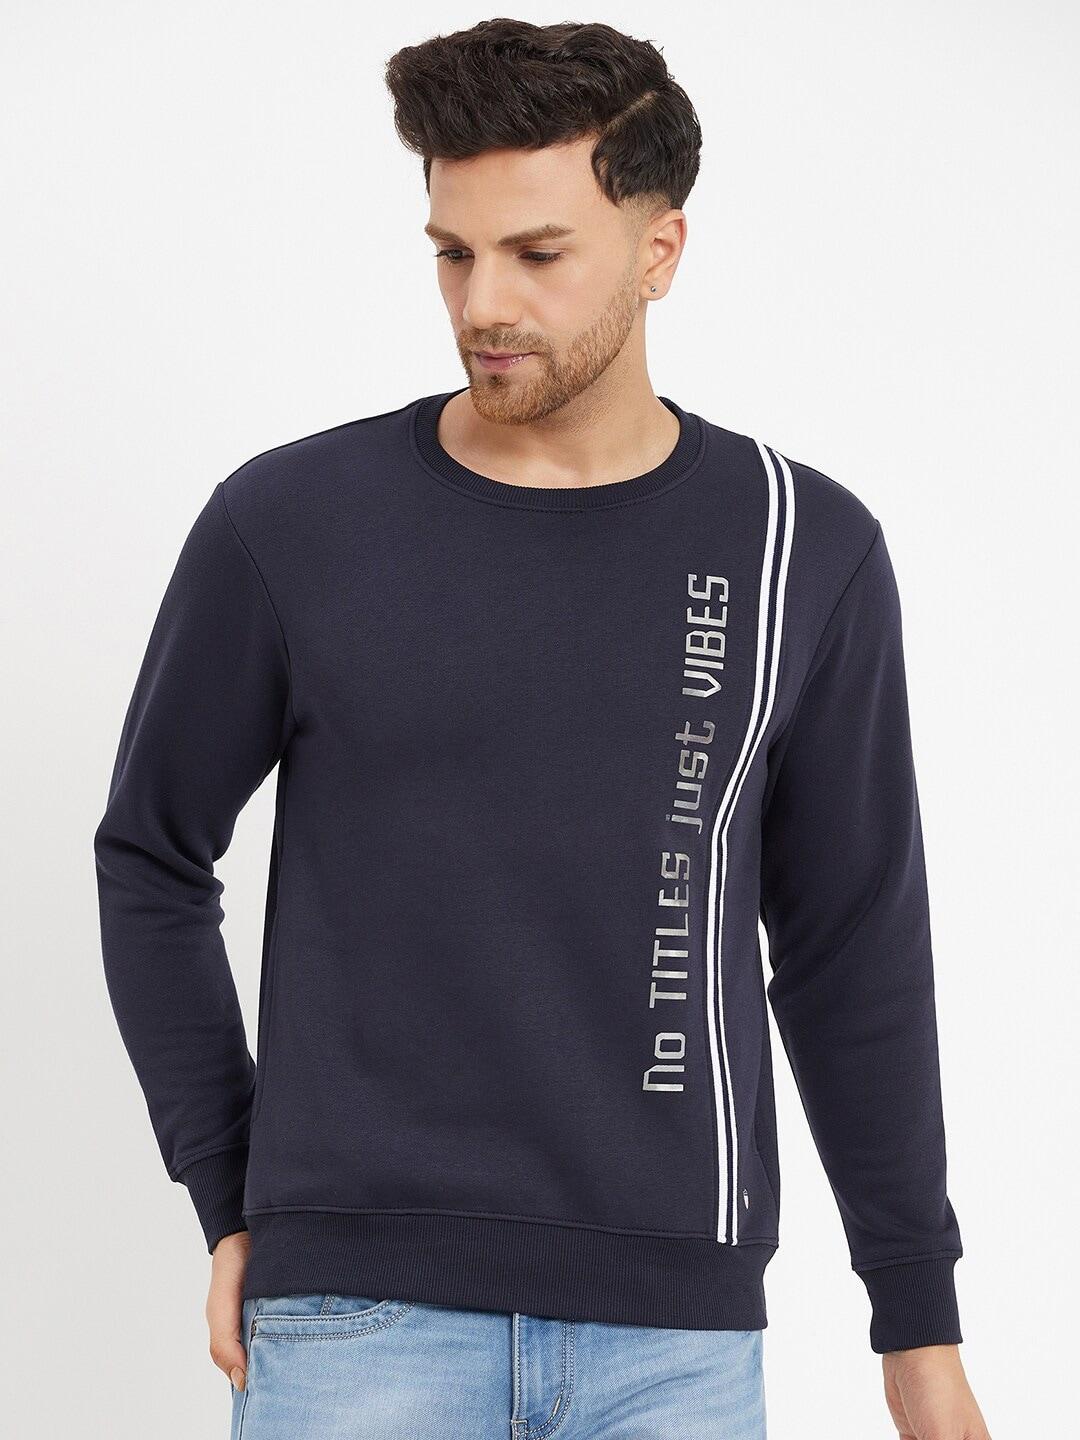 duke-typography-printed-fleece-sweatshirts